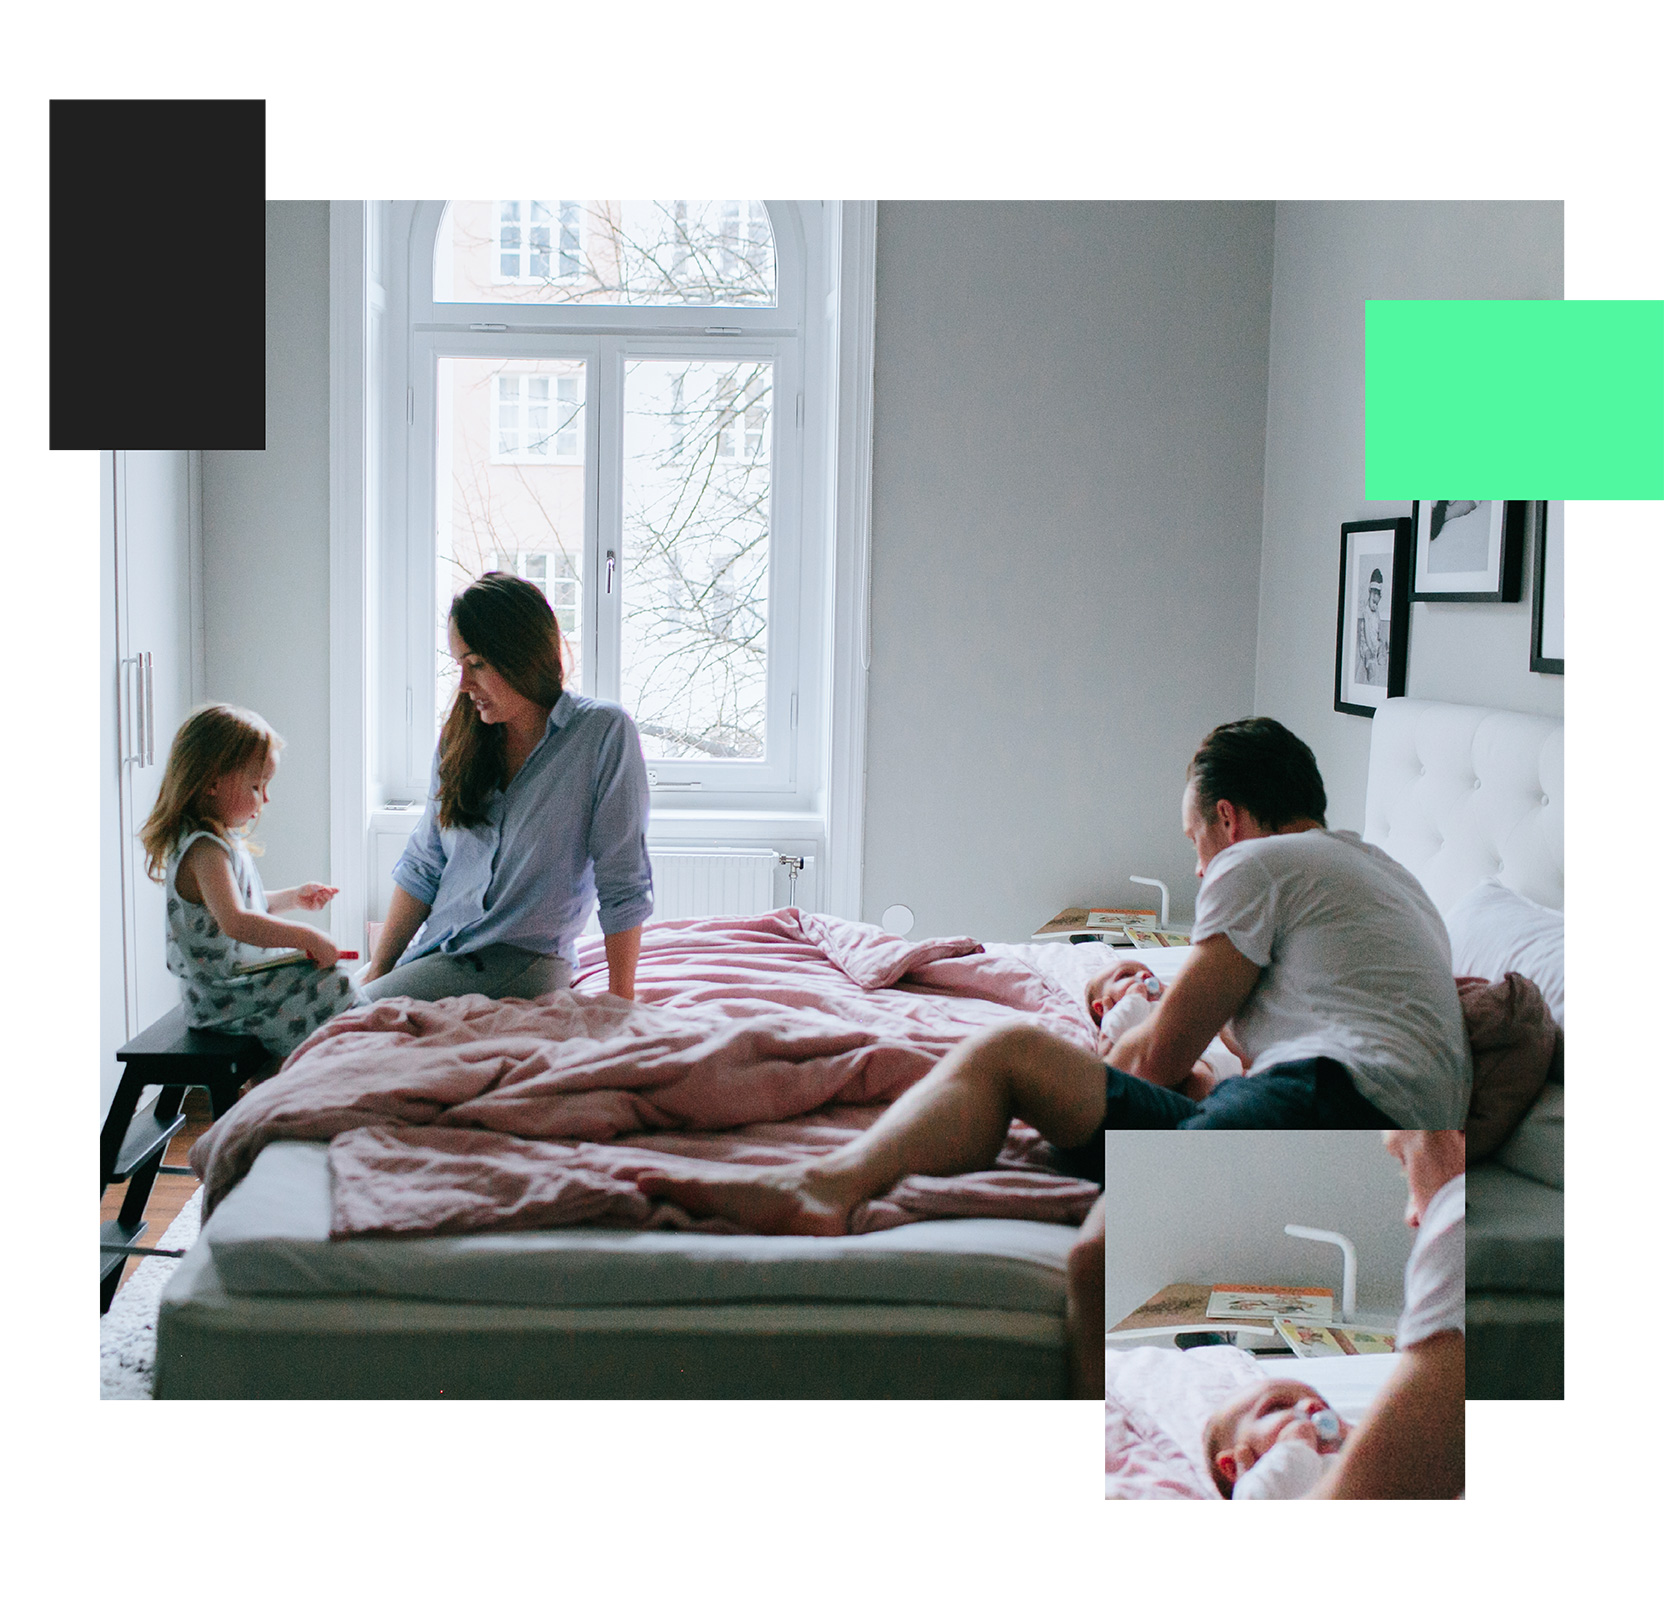 Här ser vi en familj på fyra som sitter i en stor säng. Den äldre dottern sitter på en pall framför sängen och pratar med mamman. I sängen ligger ett spädbarn och tittar på sin pappa.